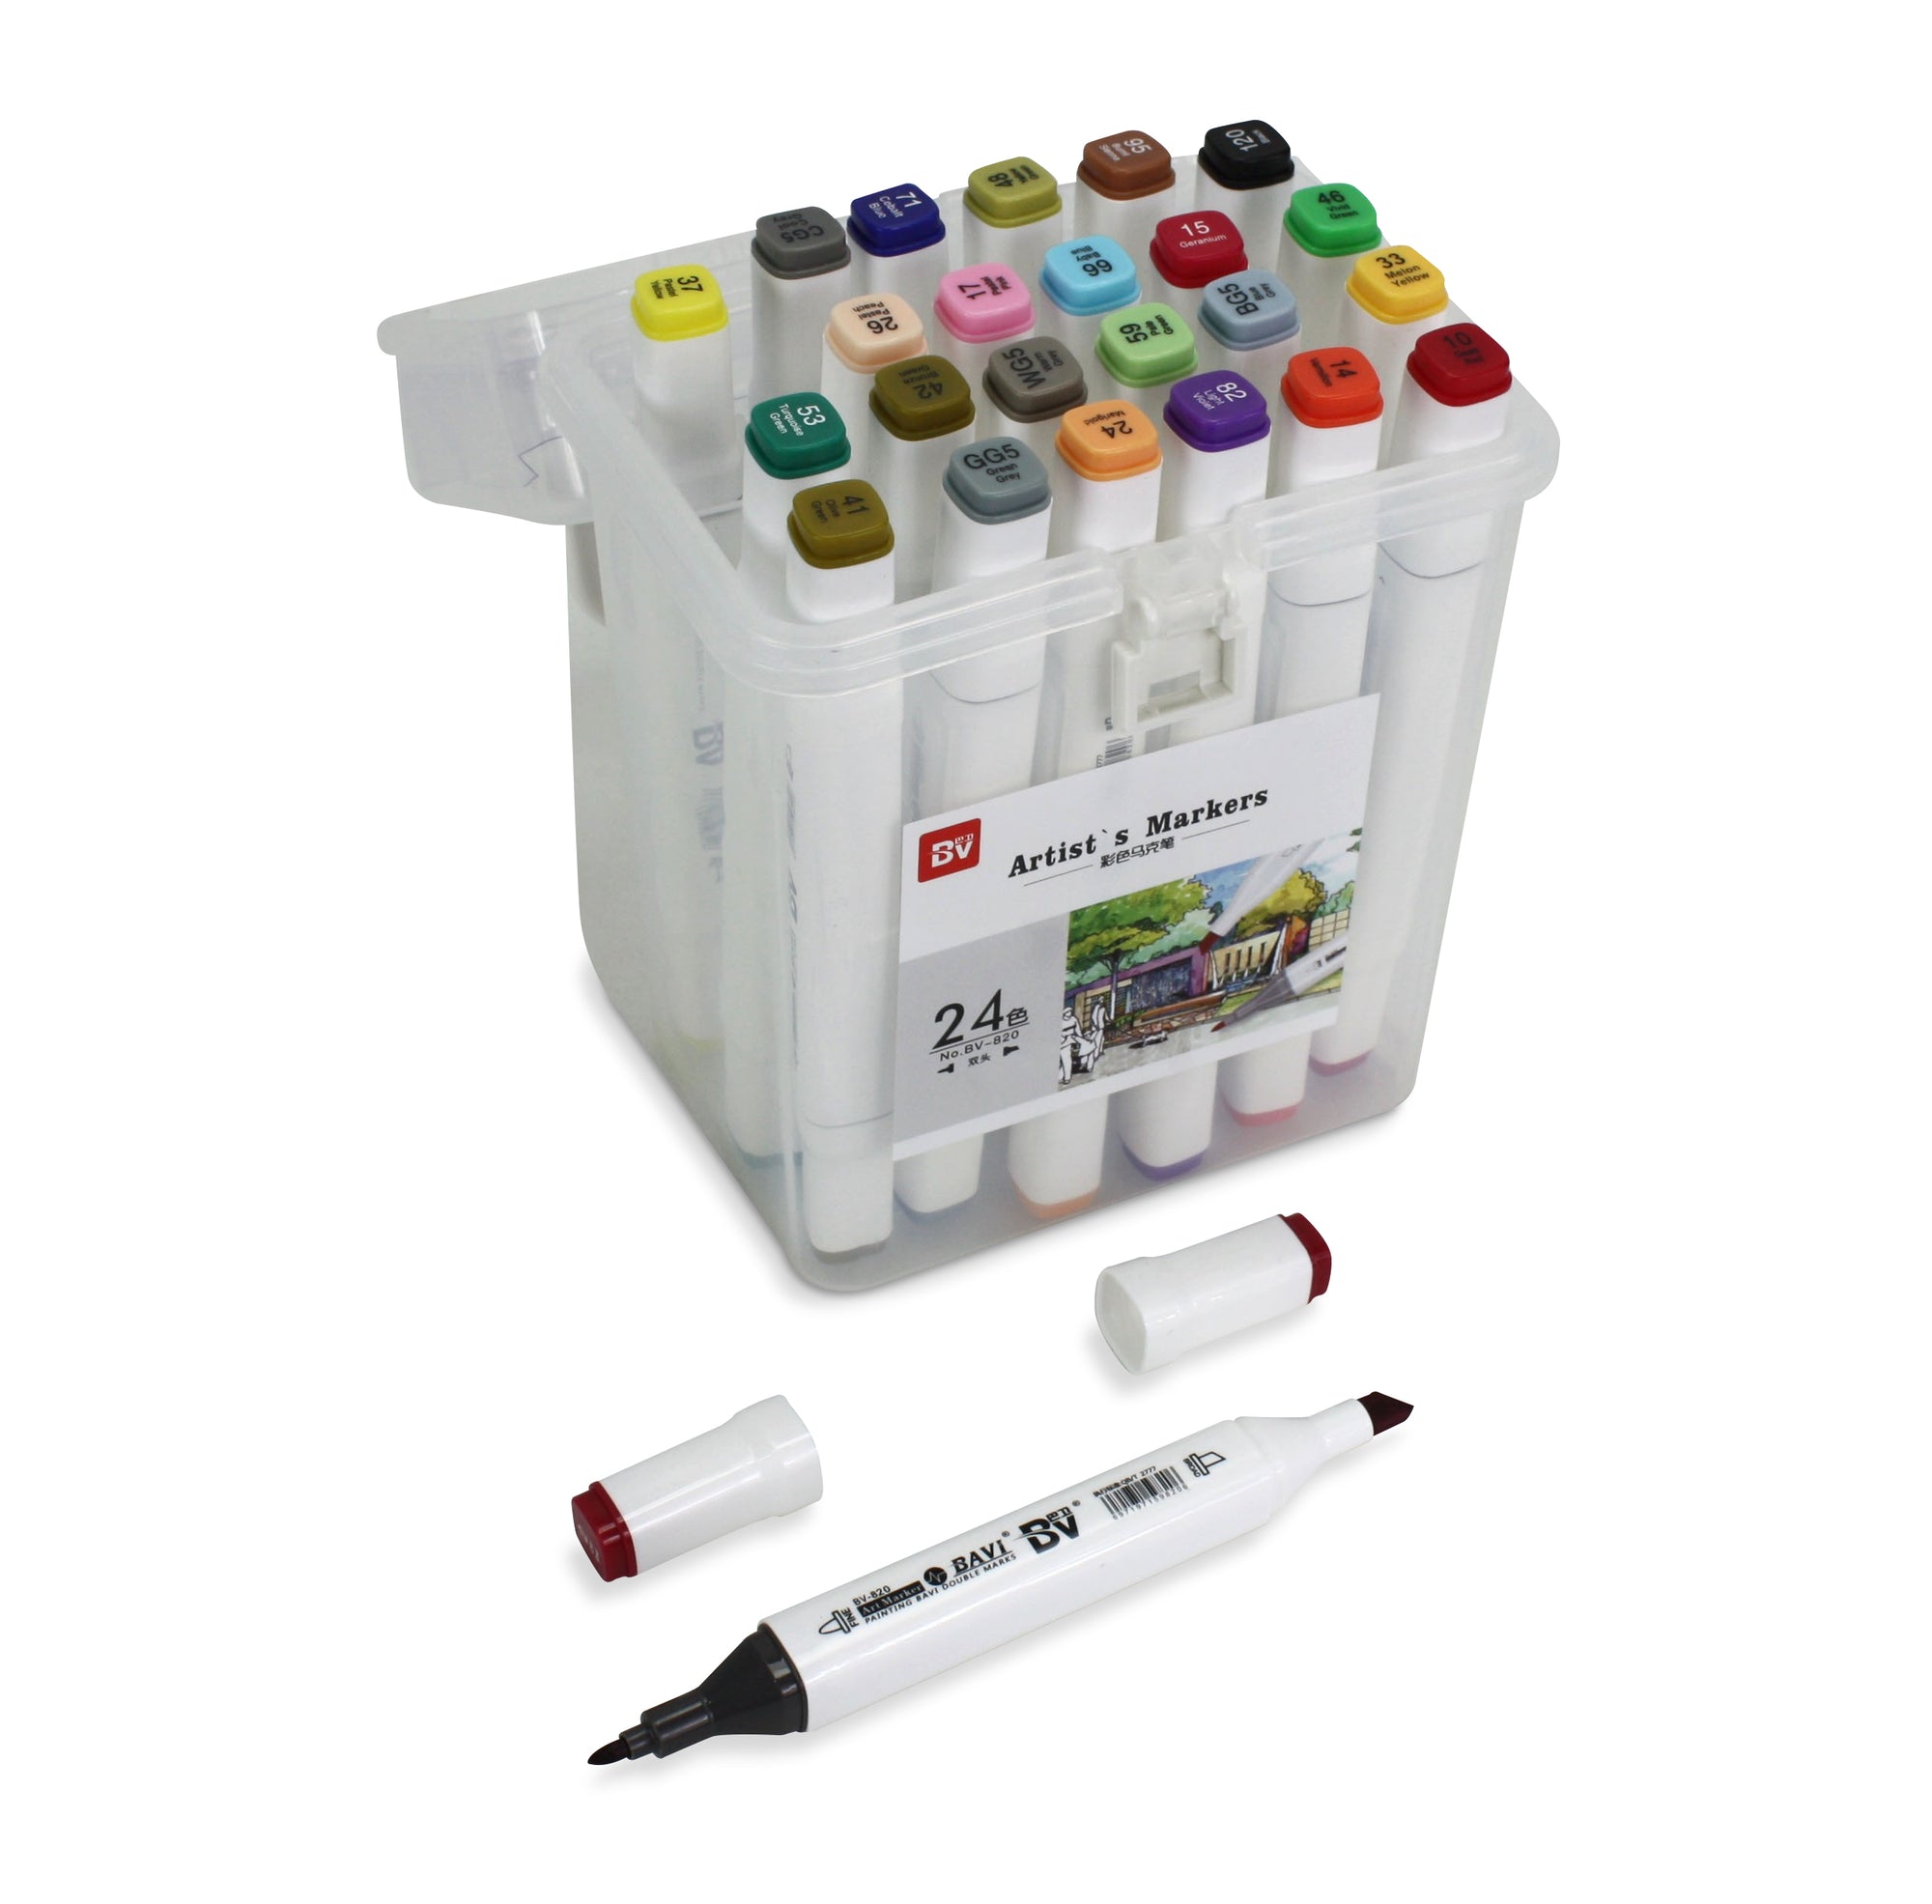 Artist's Marker Set - 24 Permanent Alcohol-based marker pens in carry case. - farangshop-co